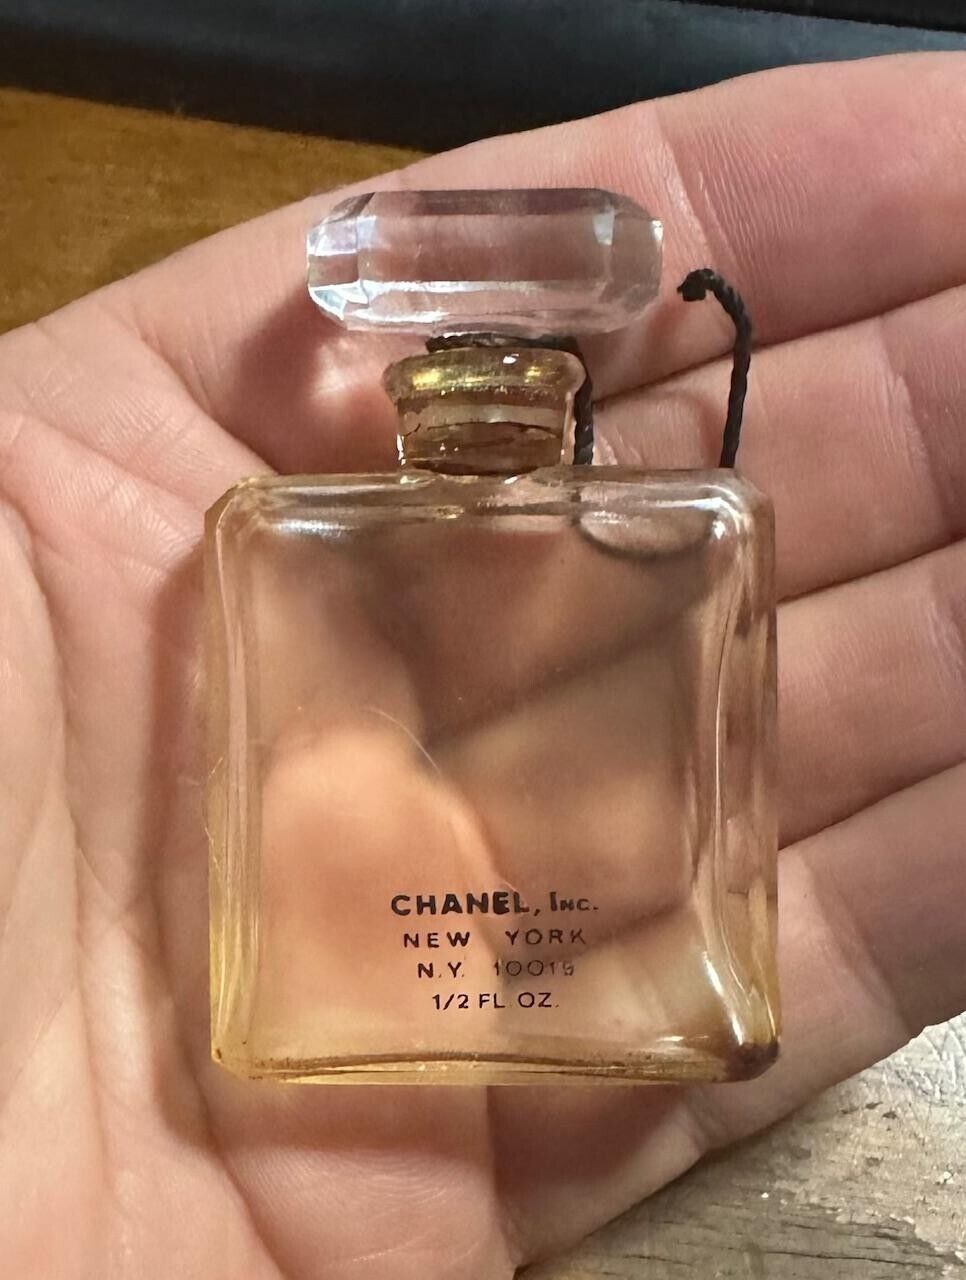 Vintage CHANEL, Inc. New York NY 10019 1/2 FL OZ  Parfum Empty Bottle